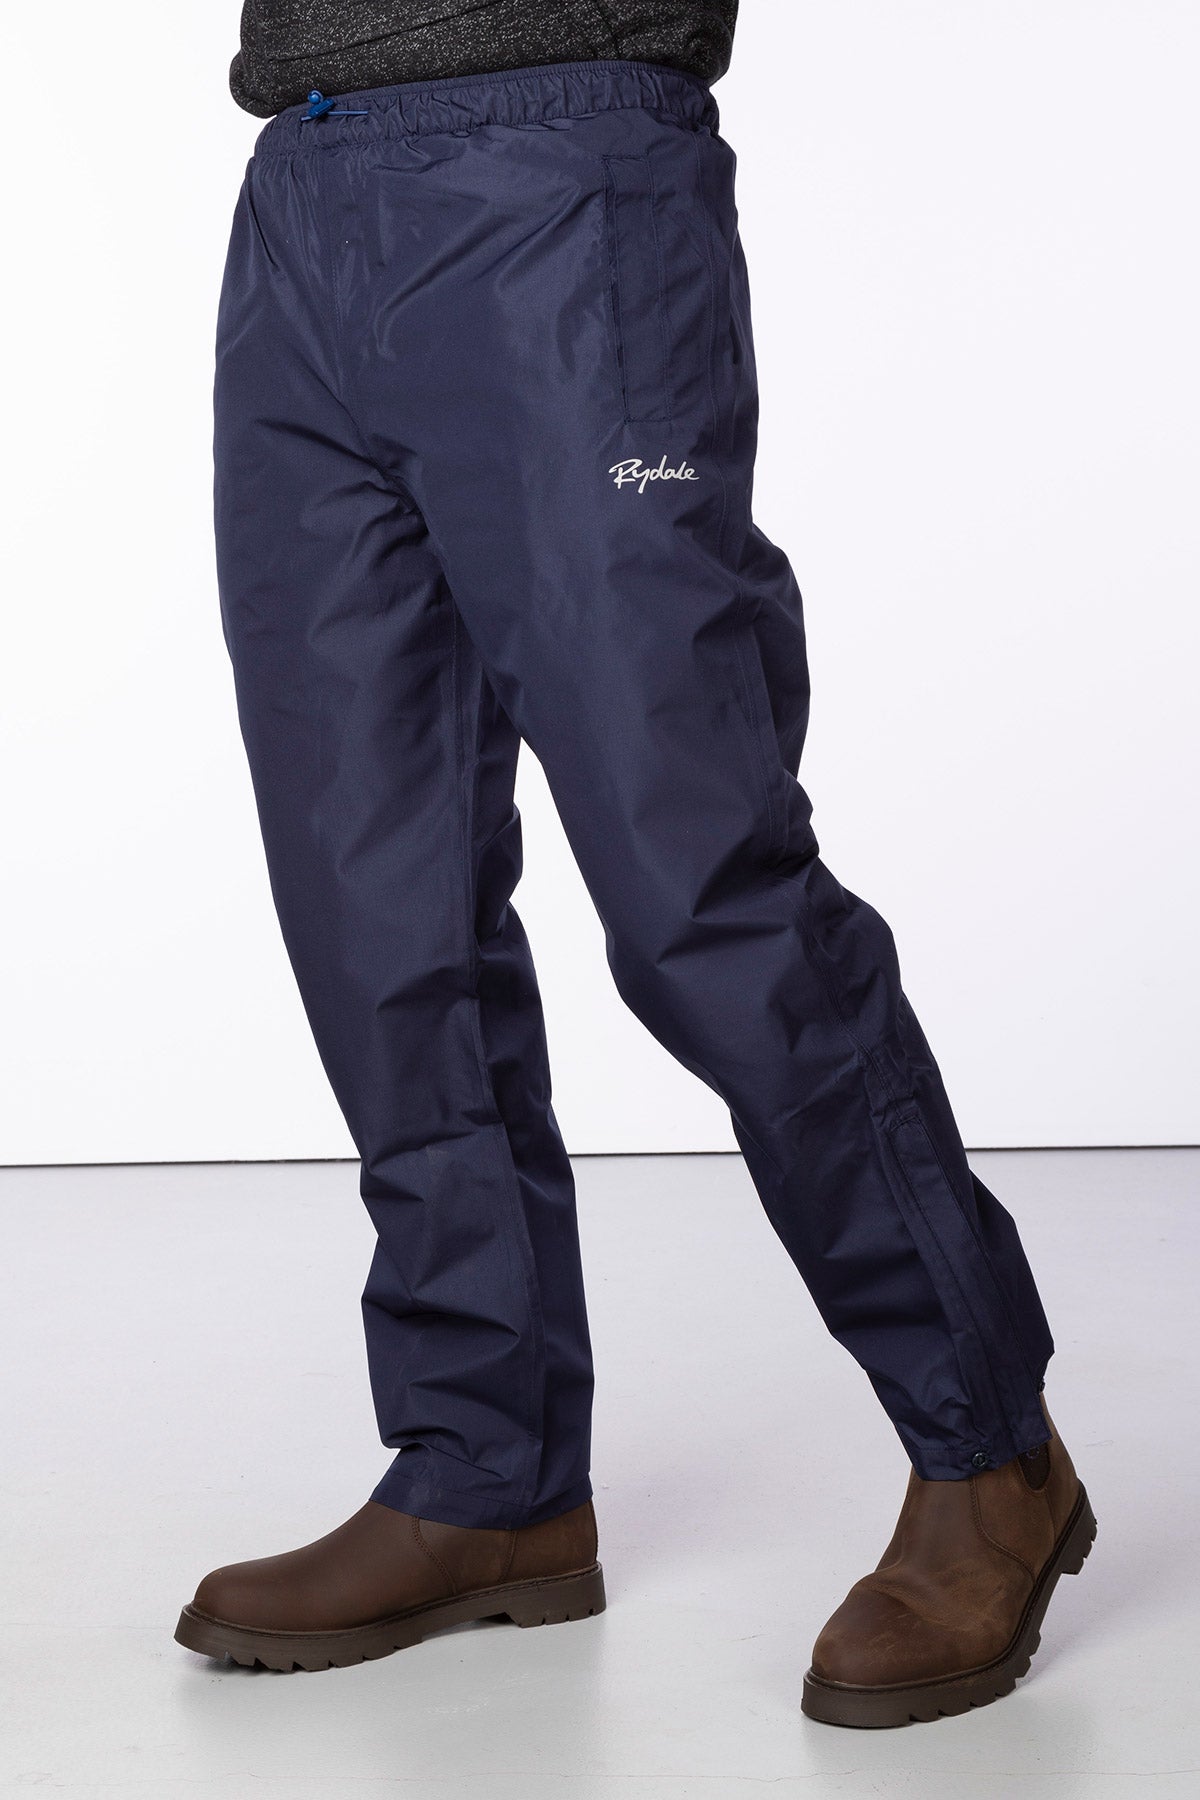 Ladies Breathable Waterproof Trousers UK  Waterproof Over Trousers  Rydale